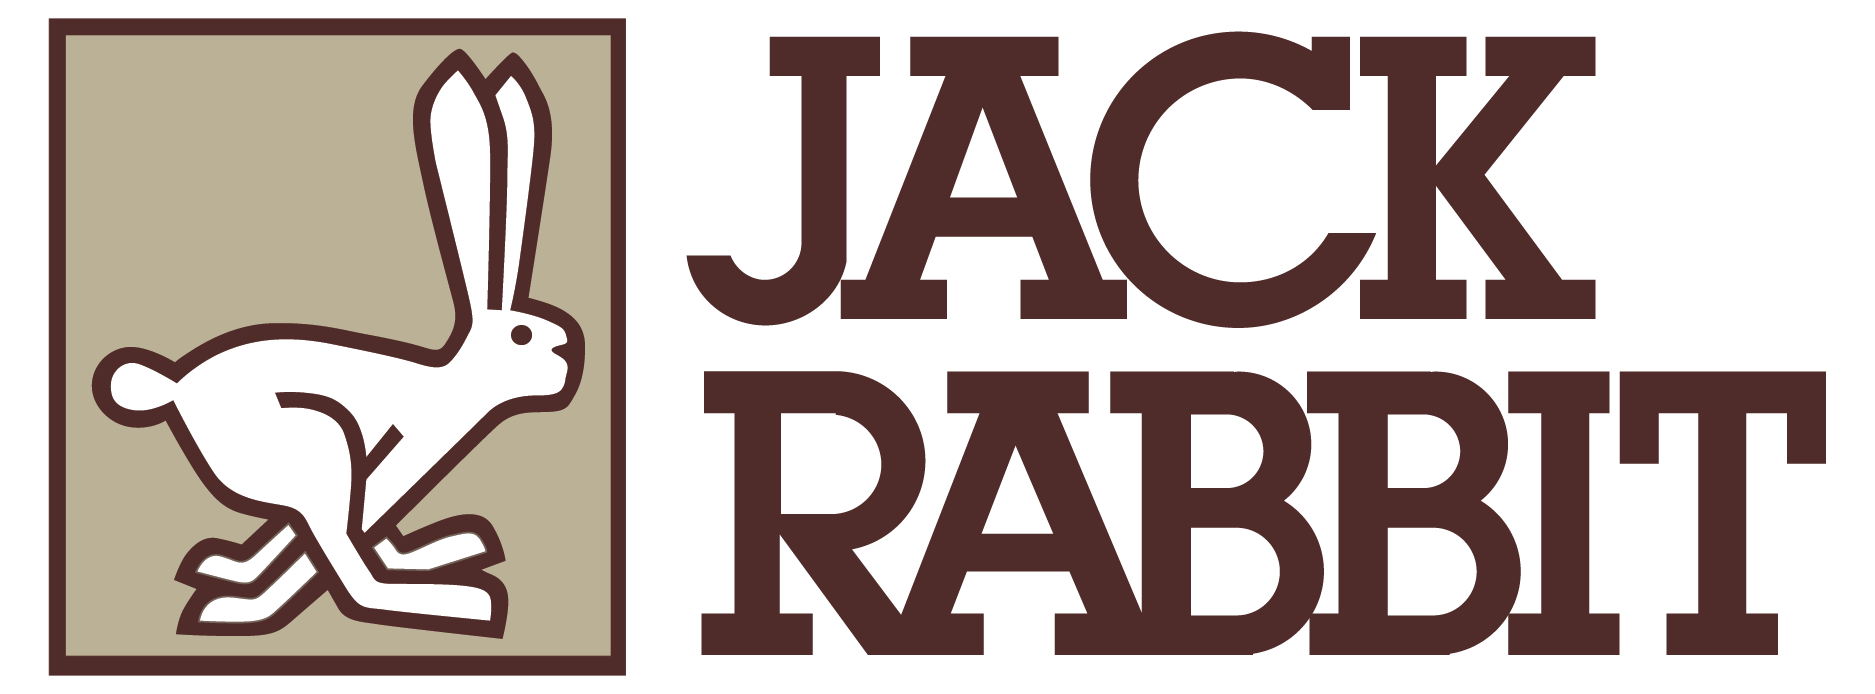 Jackrabbit Logo - Jackrabbit Equipment – Harvest Equipment Elevators Chippers ...